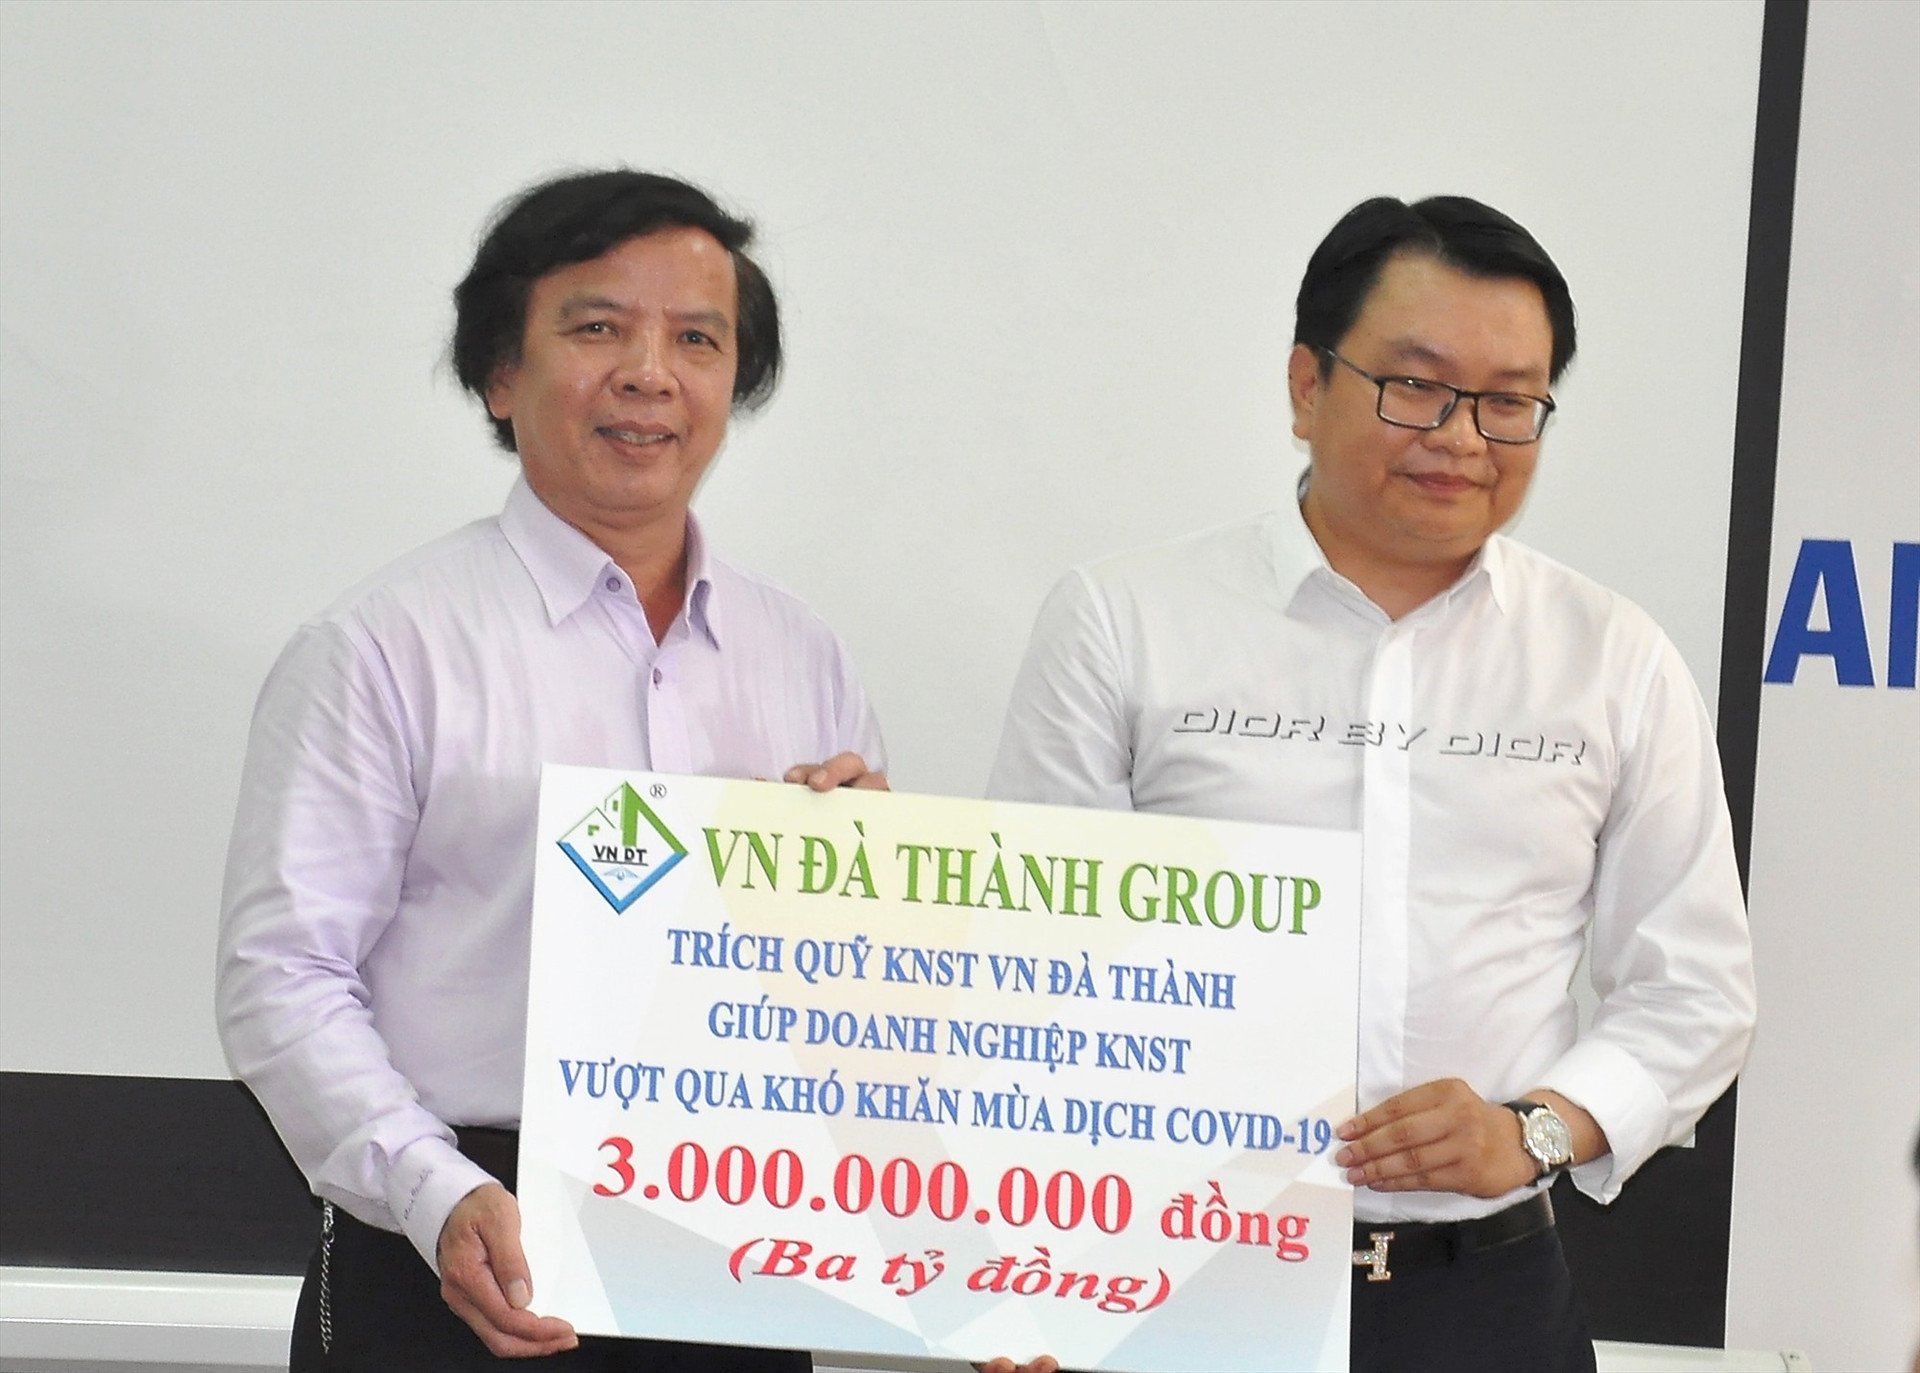 VN Đà Thành trao gói hỗ trợ 3 tỷ đồng cho Ban Điều hành hỗ trợ khởi nghiệp sáng tạo tỉnh vào tháng 3.2020. Ảnh: VINH ANH